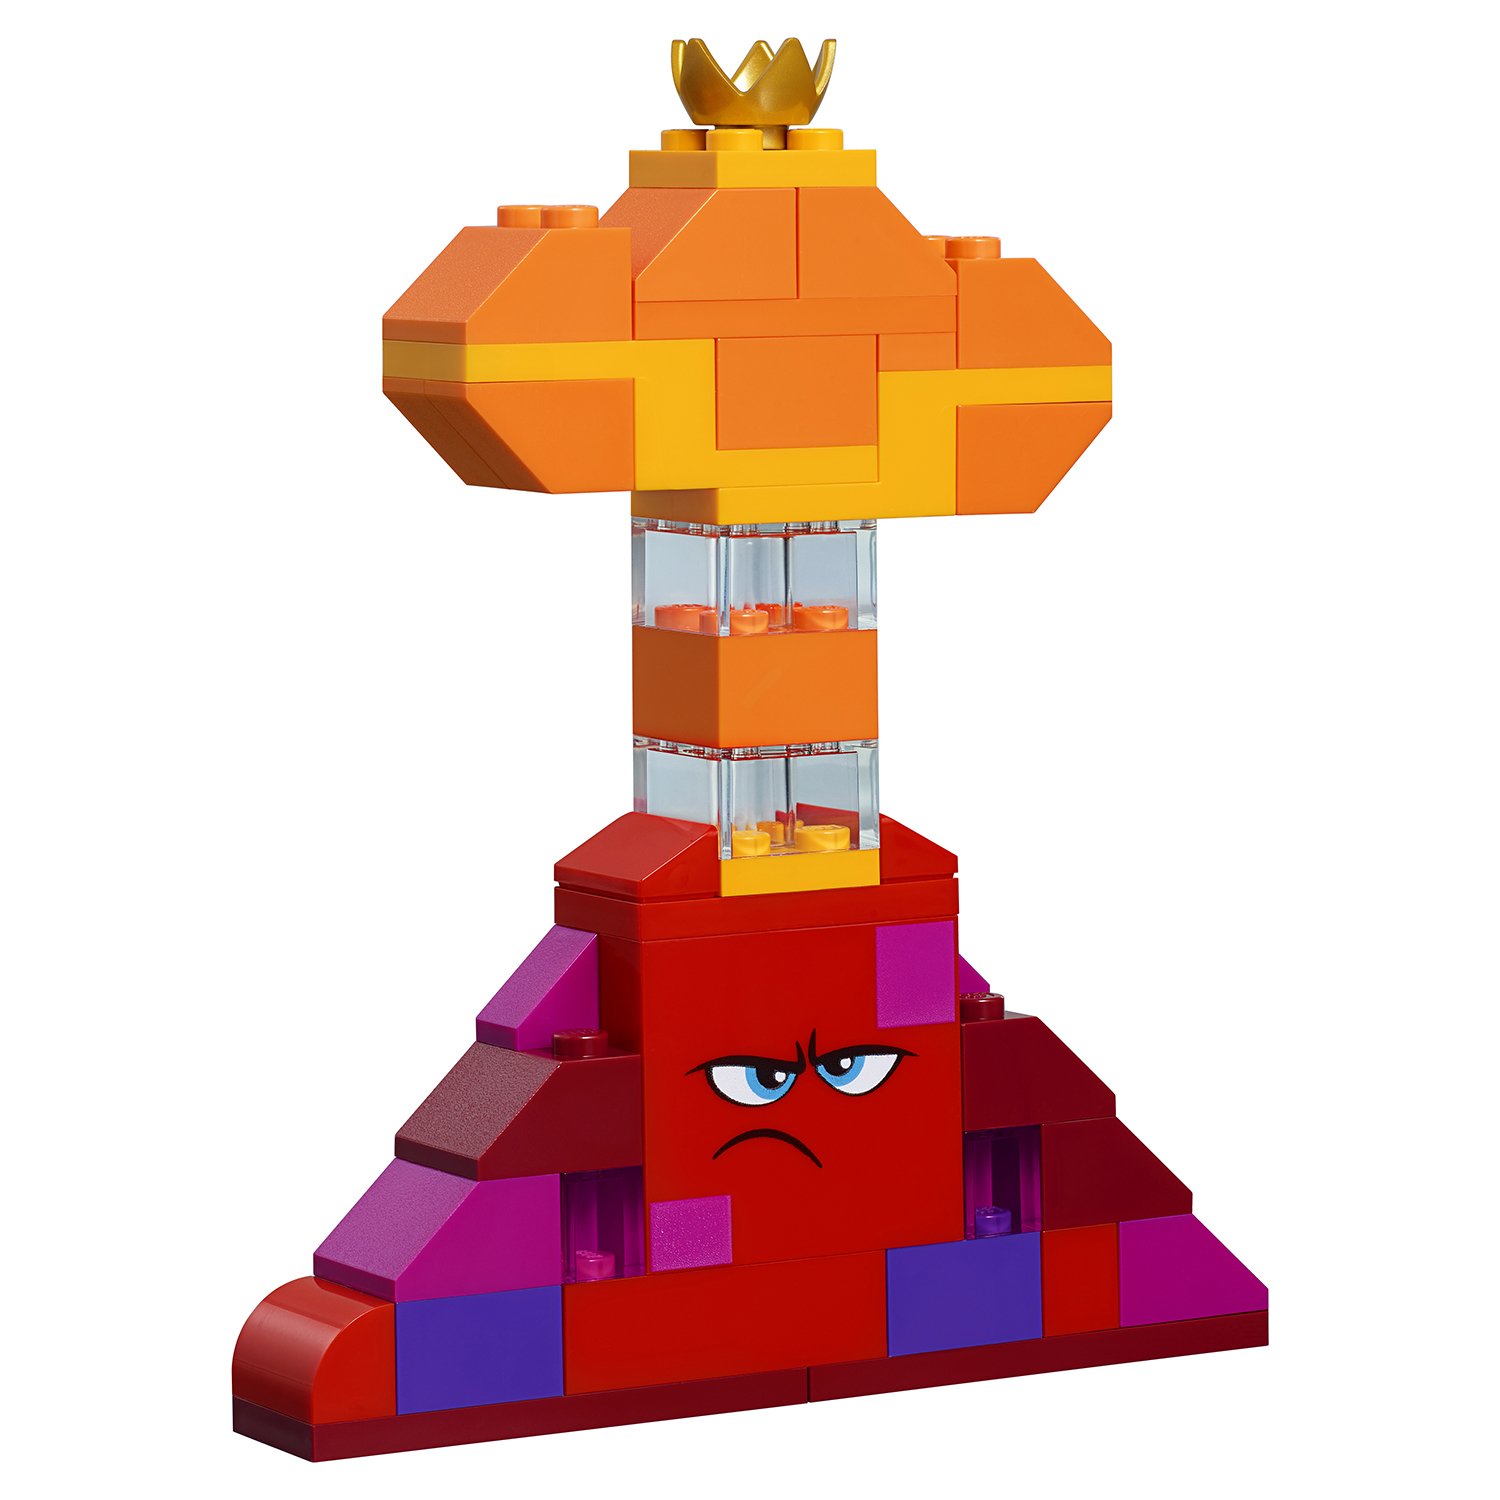 The LEGO Movie 2: Шкатулка королевы Многолики - Собери что хочешь  